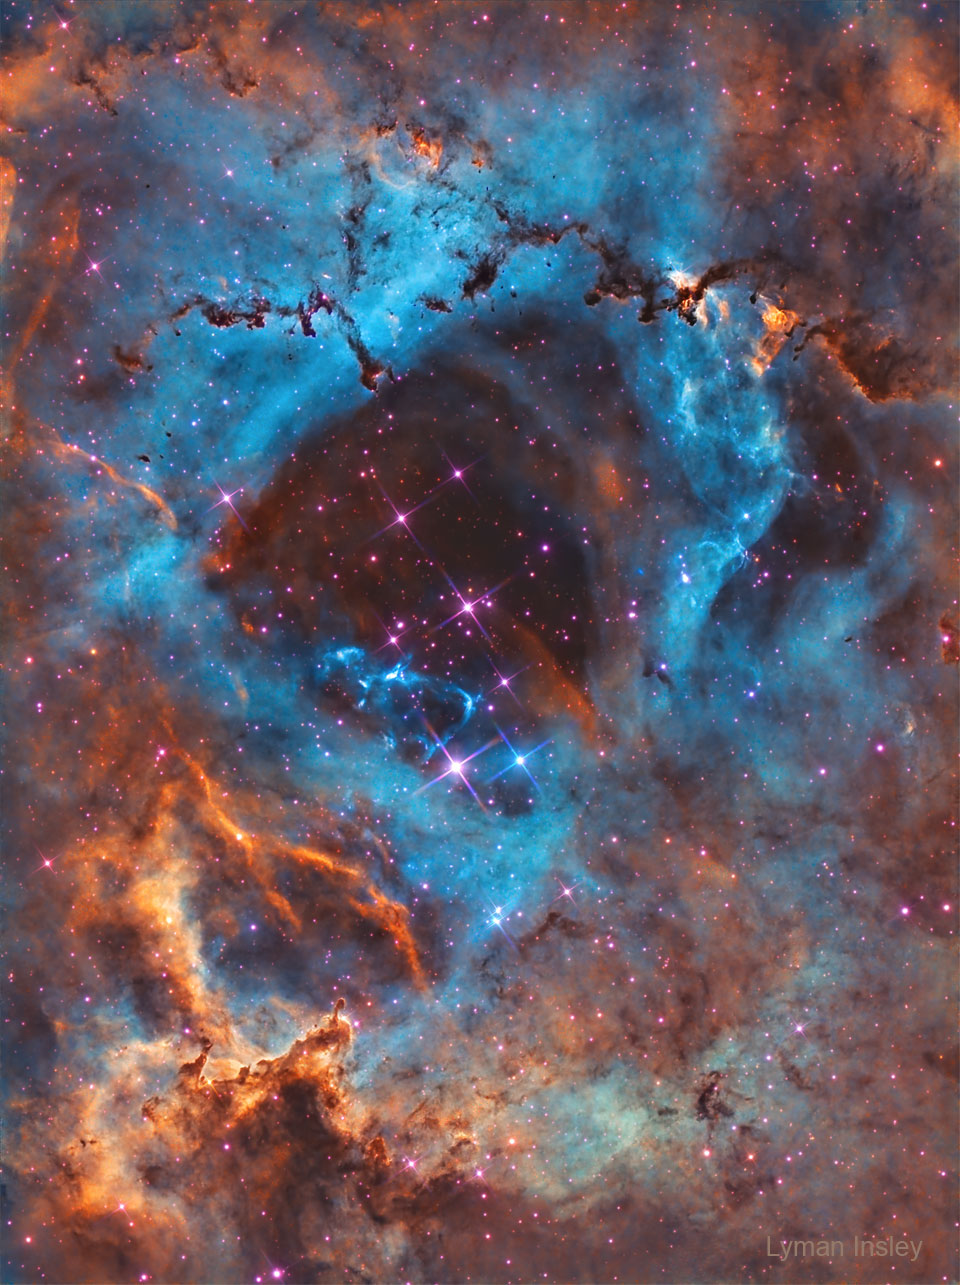 在一个由气体和尘埃组成的星云的疏散中心可以看到一簇恒星。复杂的尘埃柱出现在图像的顶部和底部。有关更多详细信息，请参阅说明